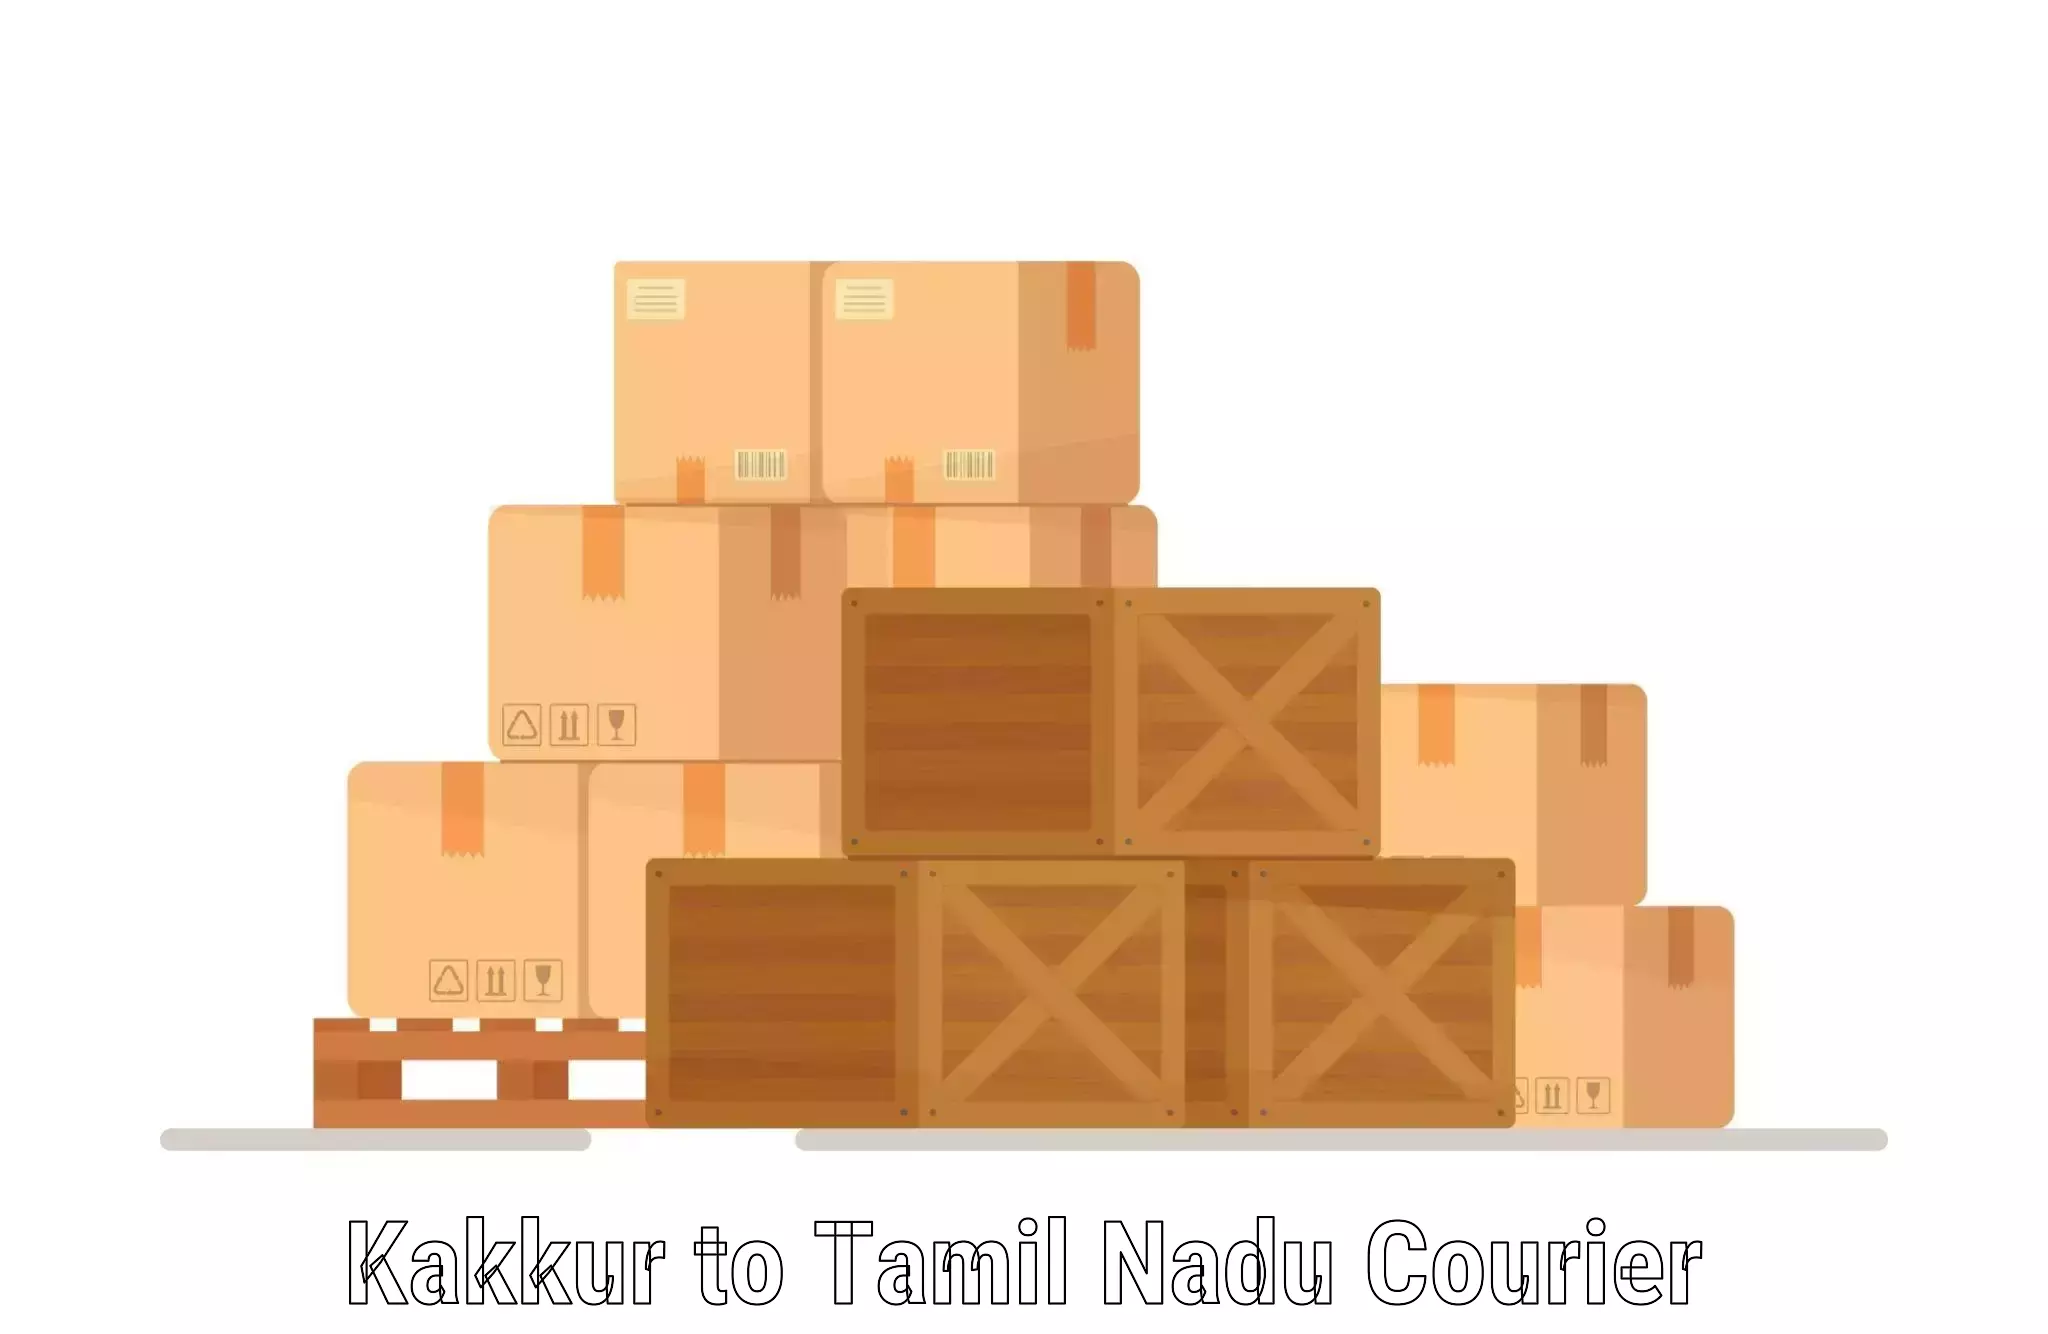 Enhanced shipping experience Kakkur to Uthangarai